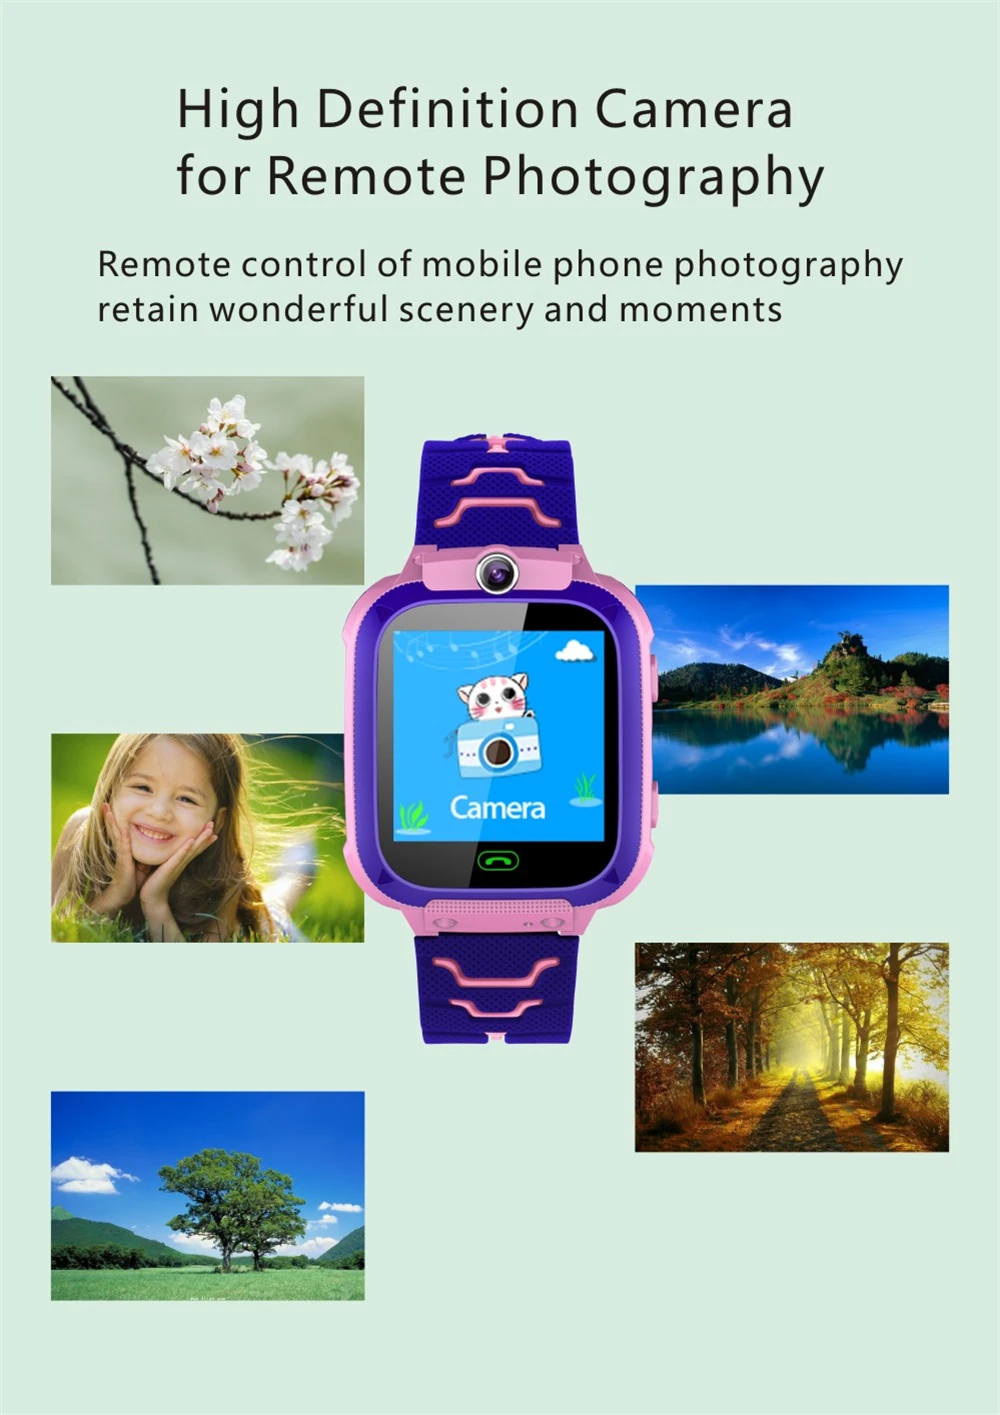 Étanche enfants montre intelligente SOS antil-perdu Smartwatch bébé 2G carte SIM horloge appel localisation Tracker Smartwatch PK Q50 Q90 Q528.